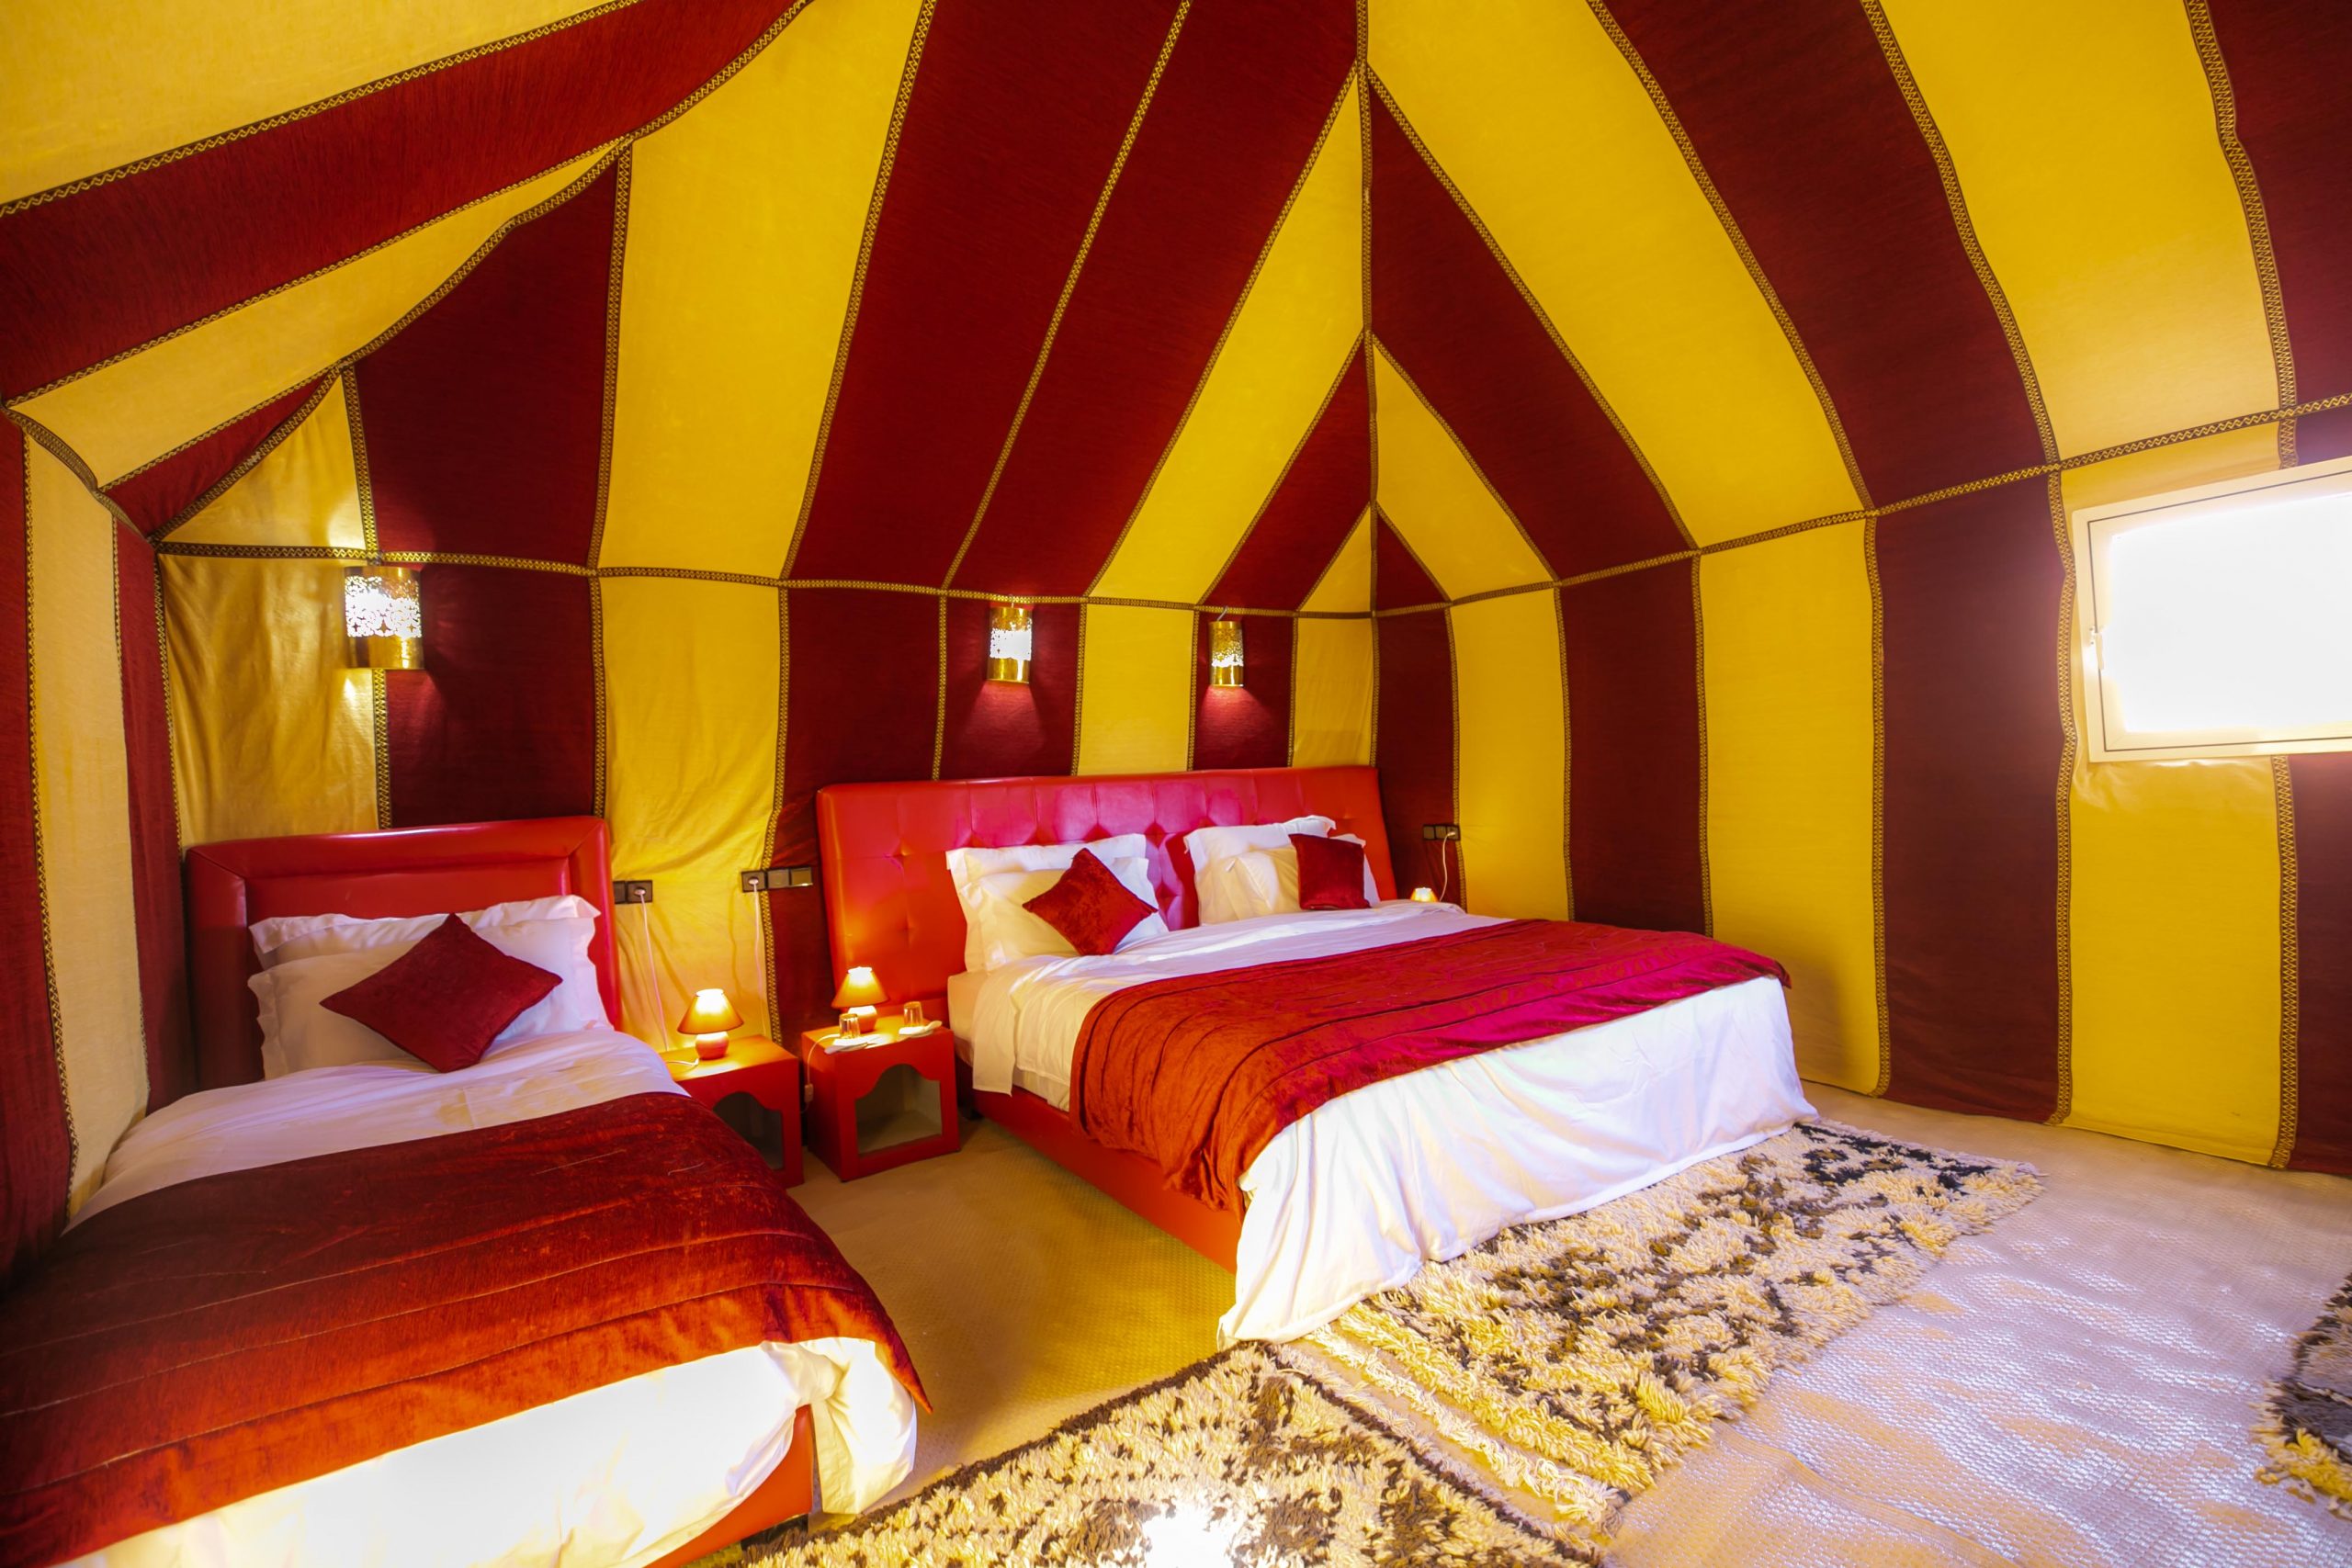 Morocco desert camps - Luxury Sahara Camp vs Standard desert camp